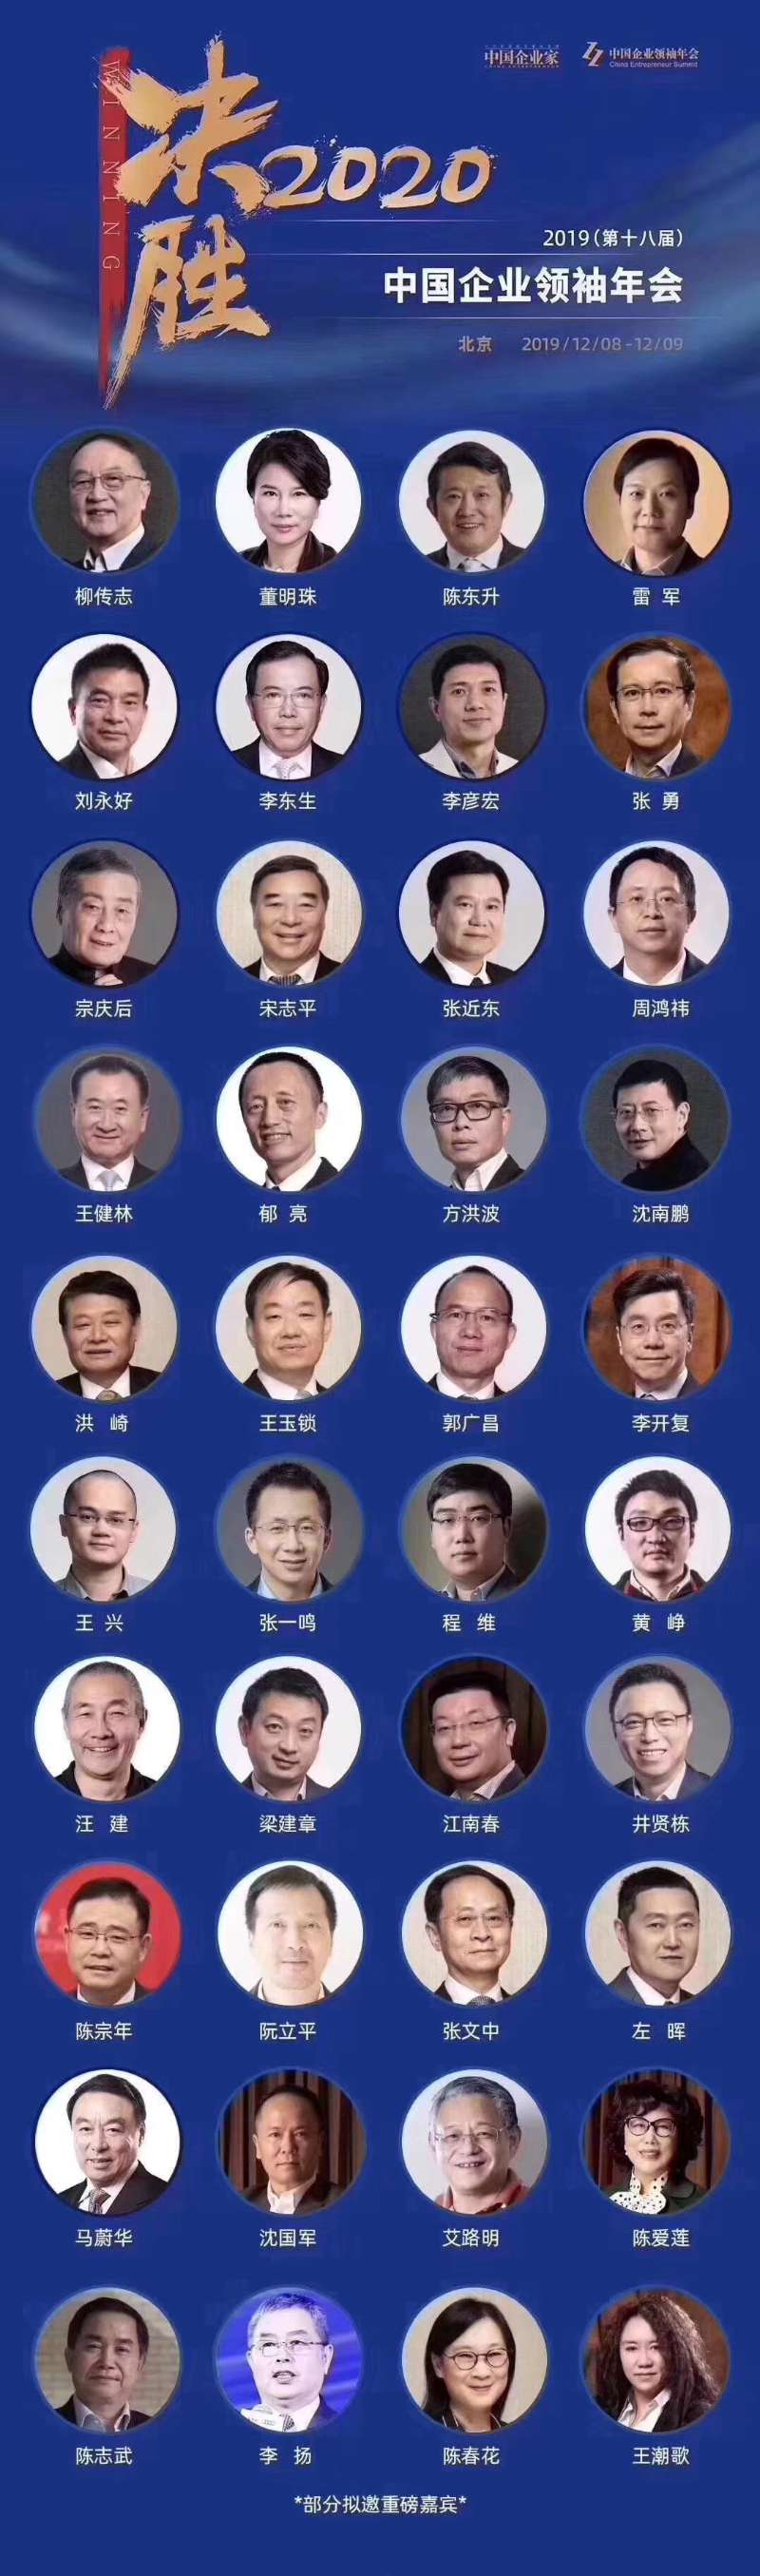 决胜2020-第十八届中国企业领袖年会